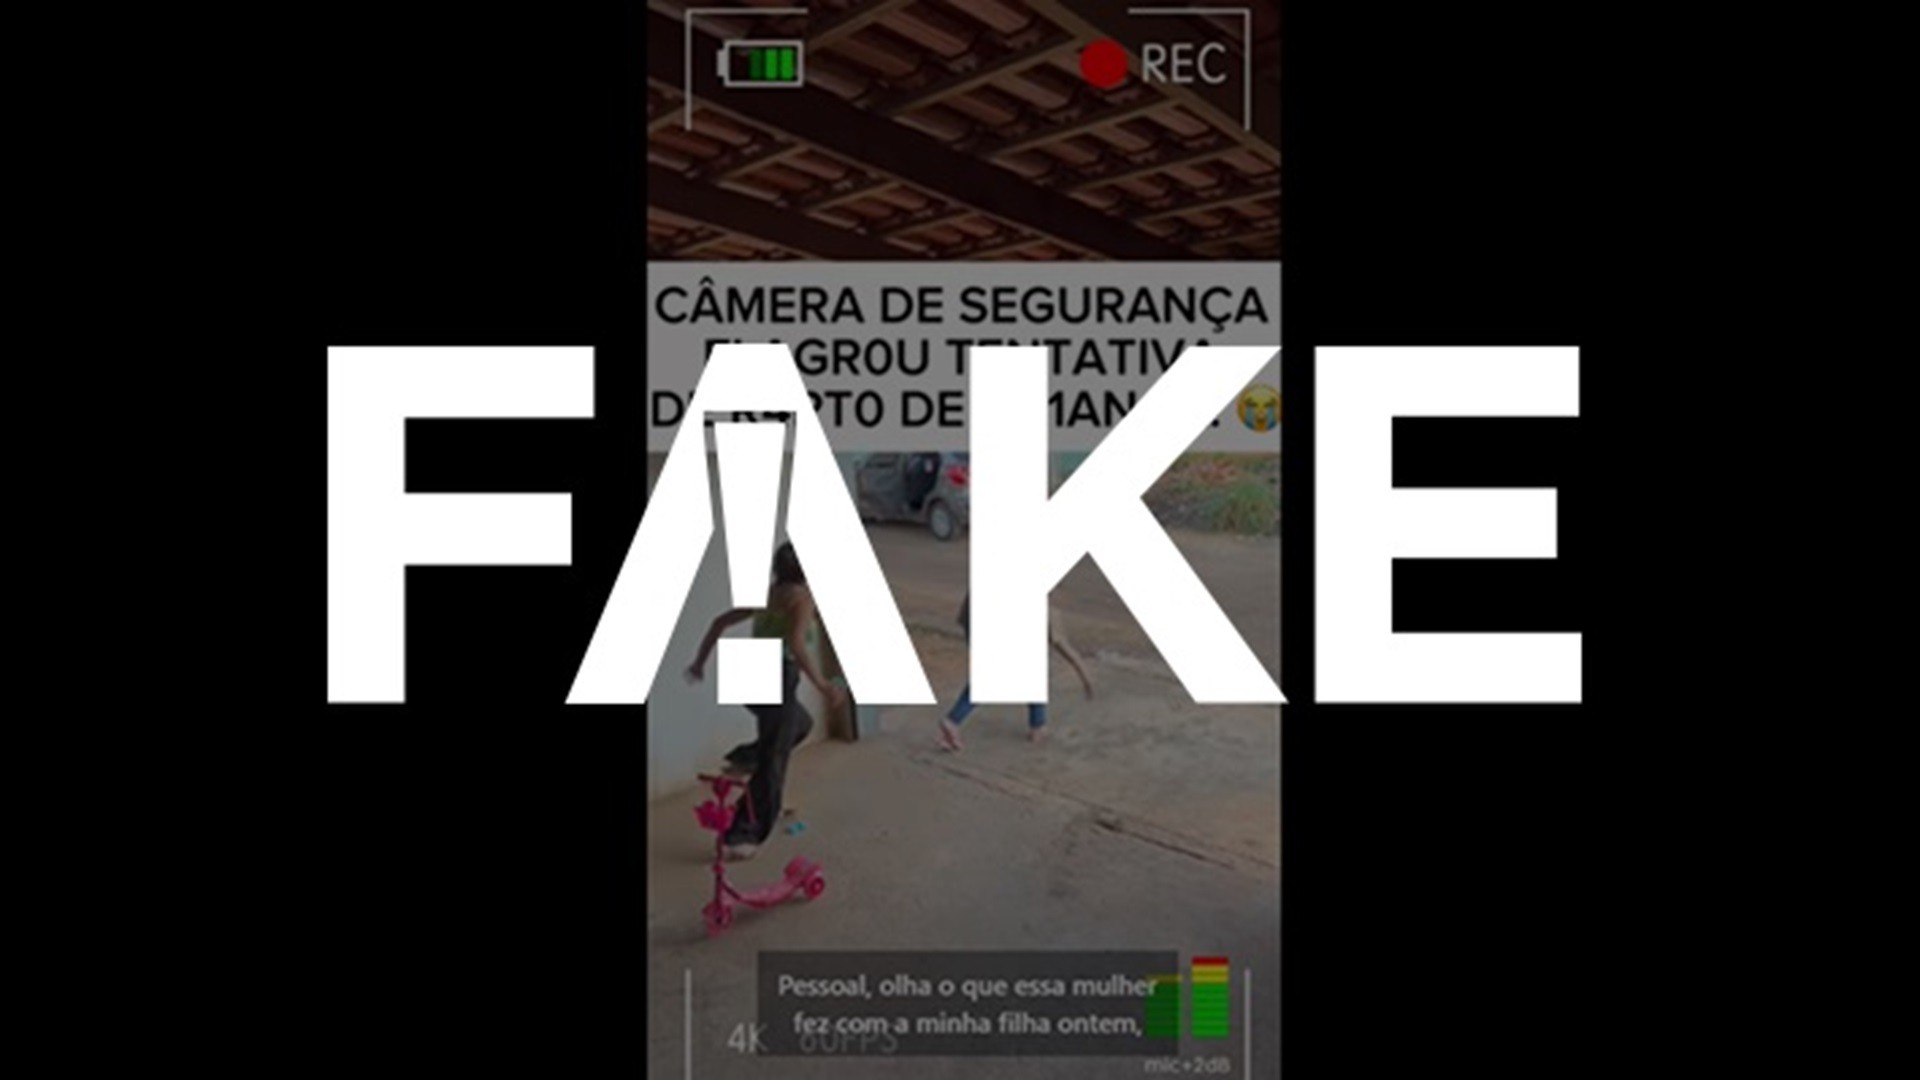 É #FAKE que vídeo mostre tentativa de rapto de criança; trata-se de uma encenação